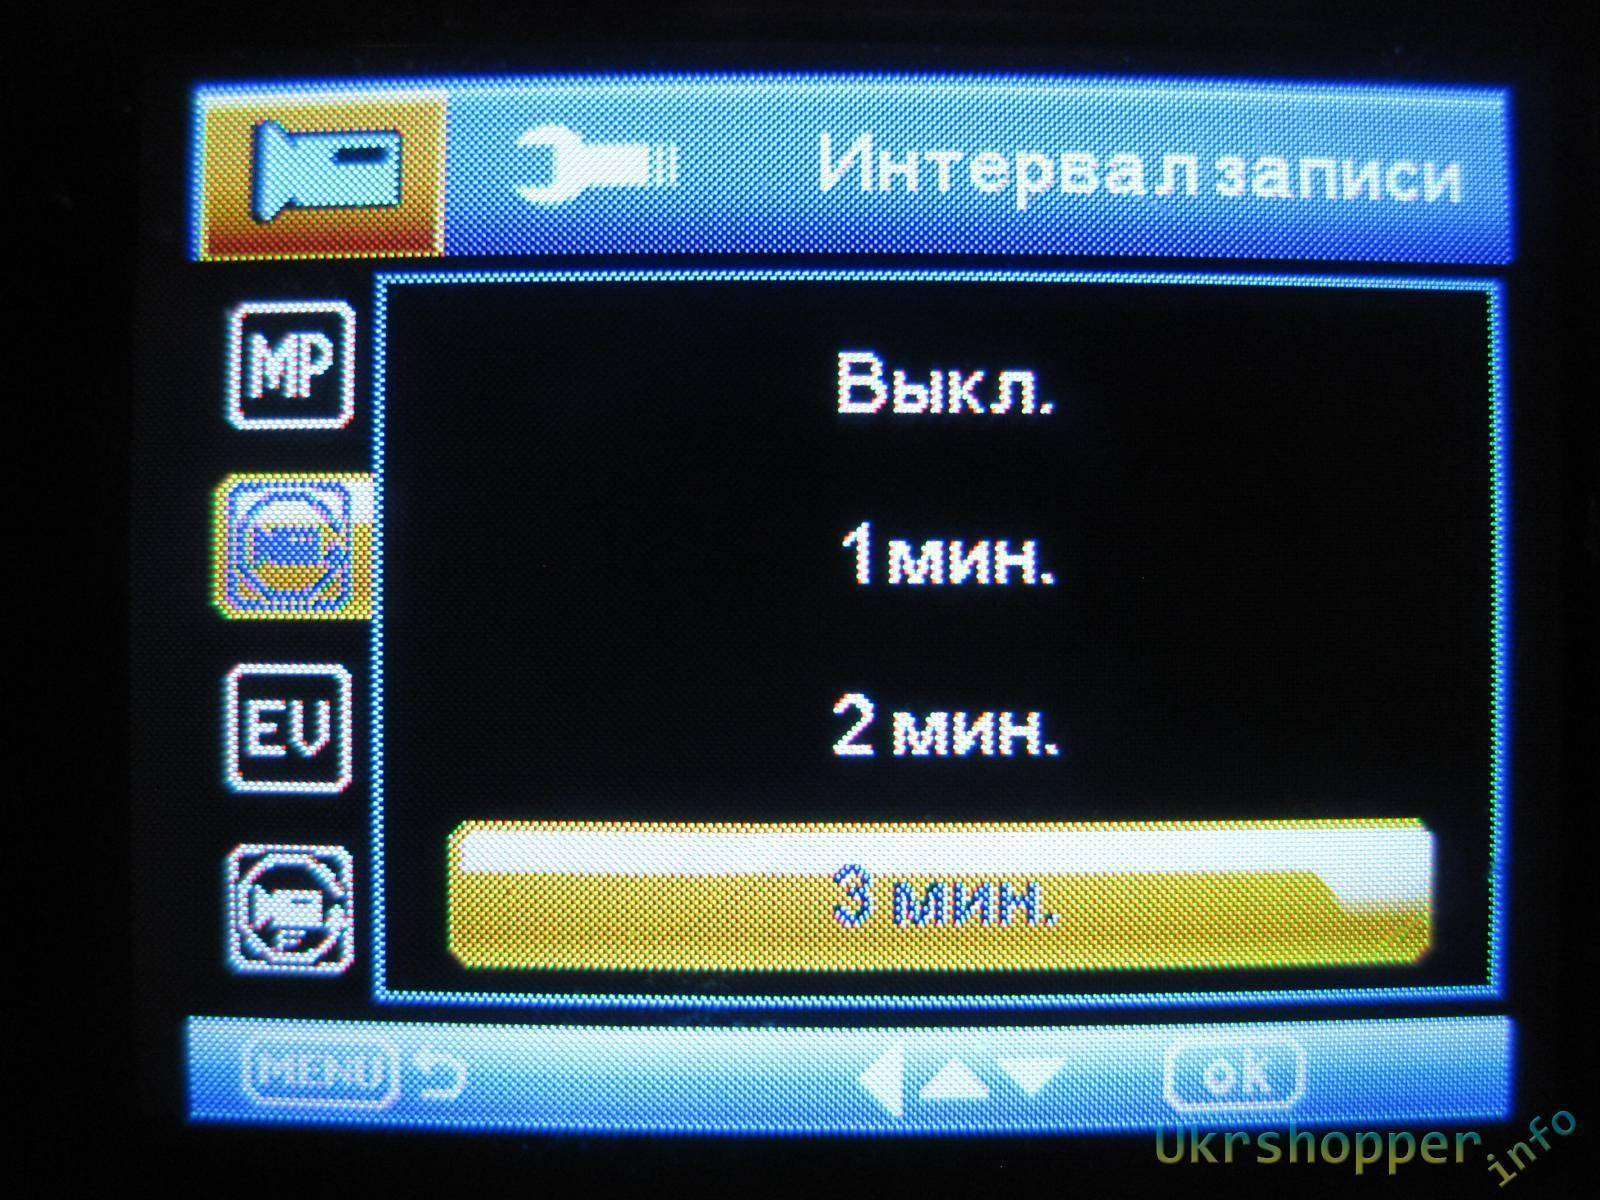 Buysku: Видеорегистратор Novatek С900 - бюджетное решение в ваш автомобиль